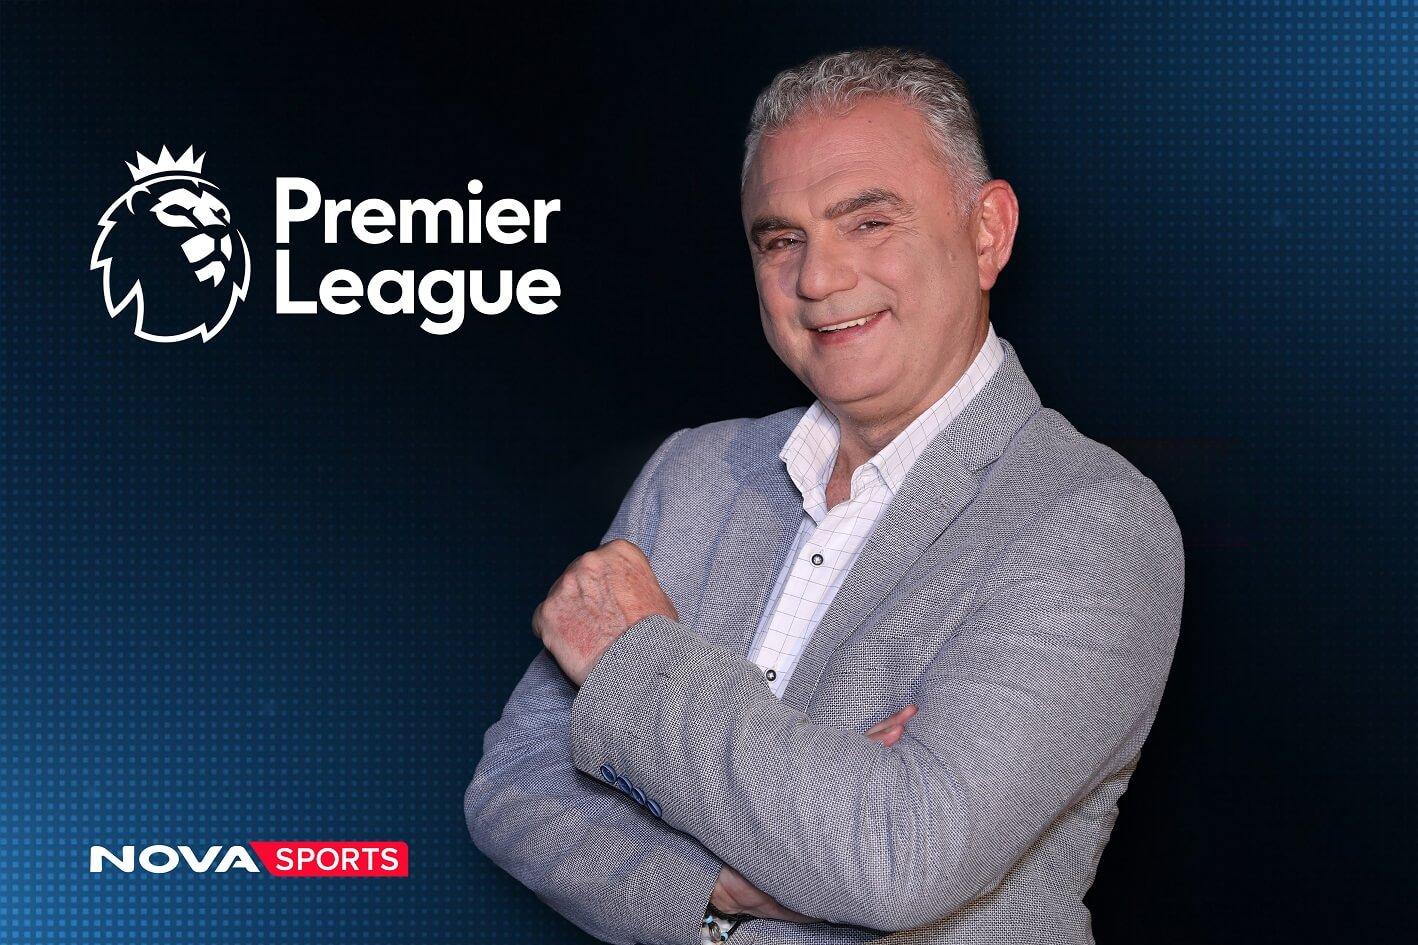 Η Premier League στα κανάλια Novasports